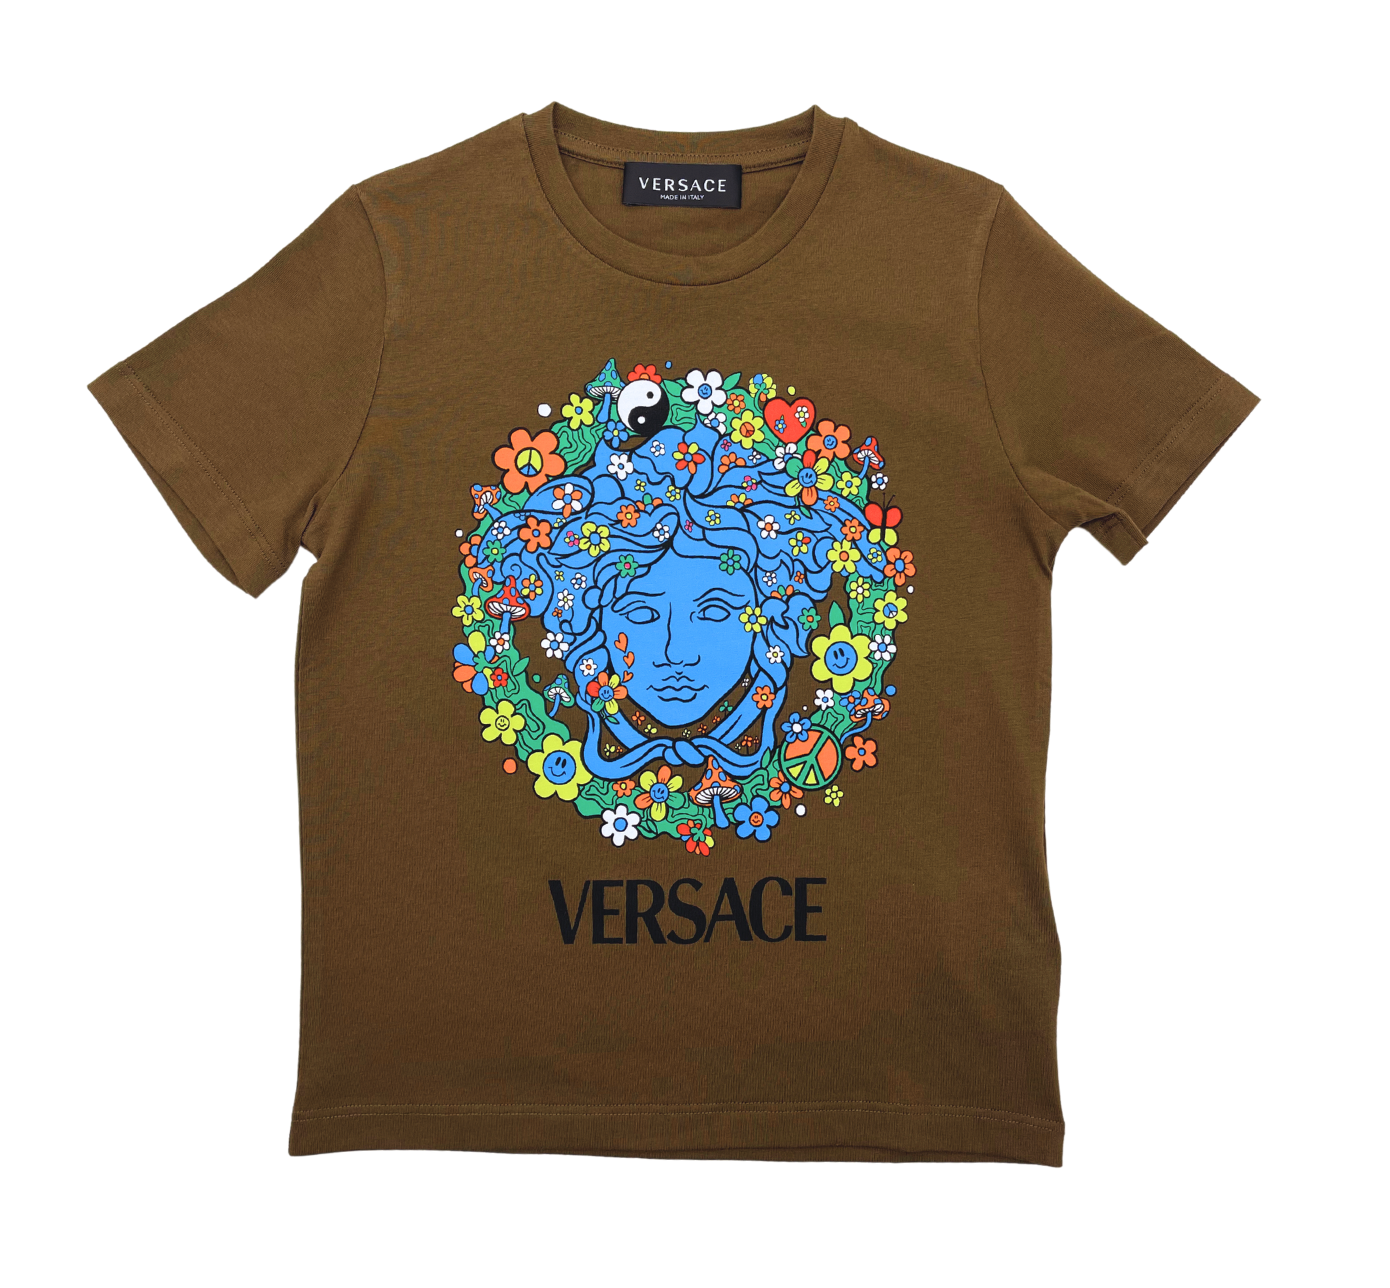 VERSACE - T-shirt - 5 years